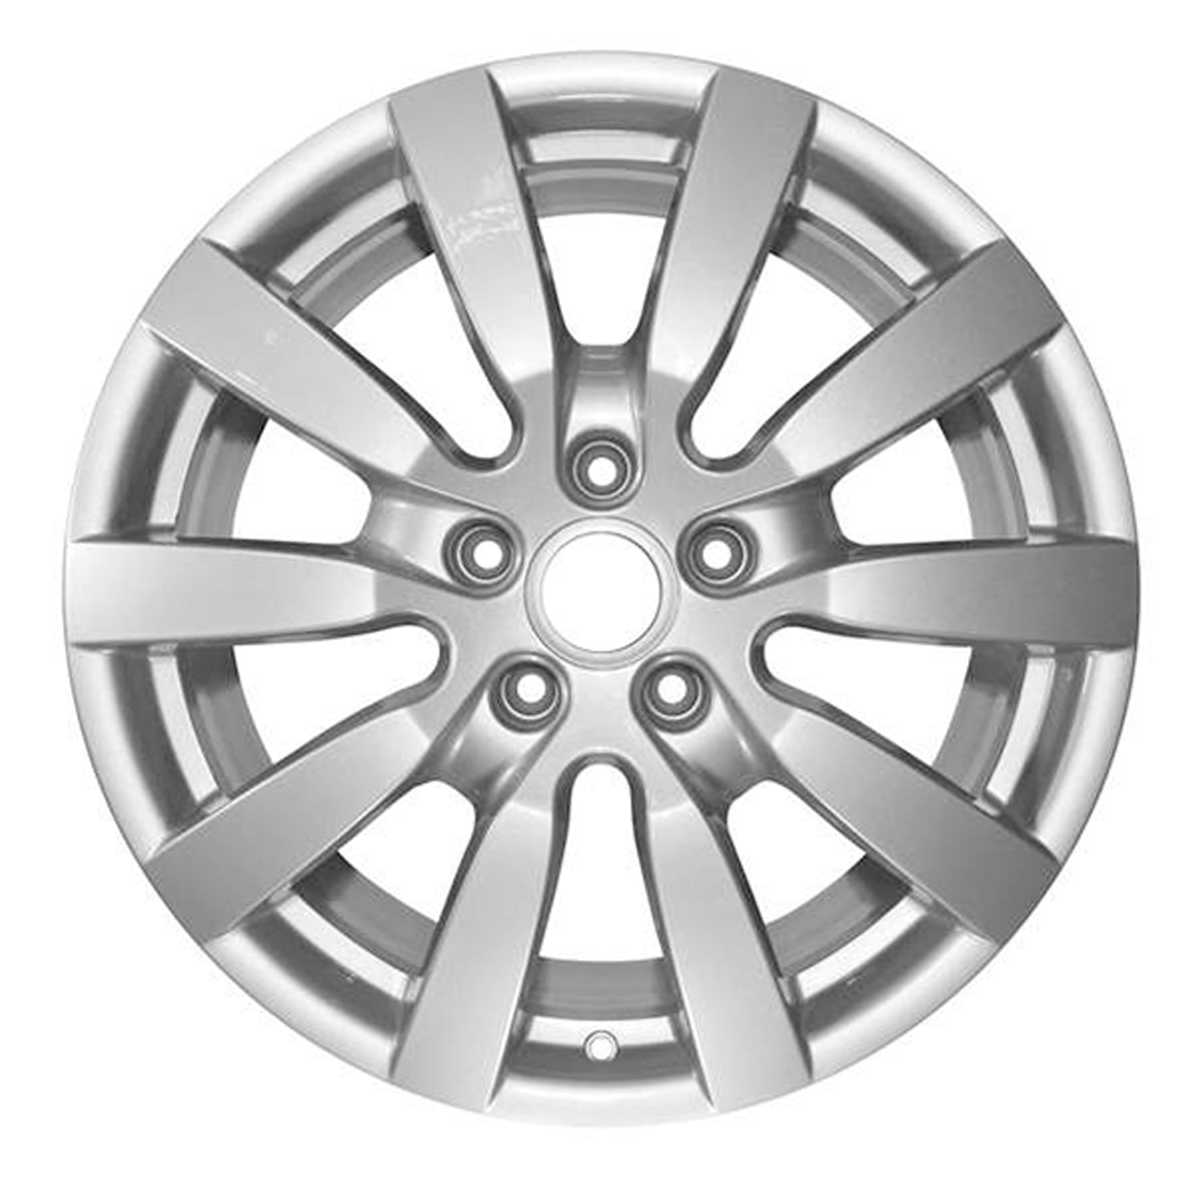 2015 Porsche Cayenne 20" OEM Wheel Rim W67405S